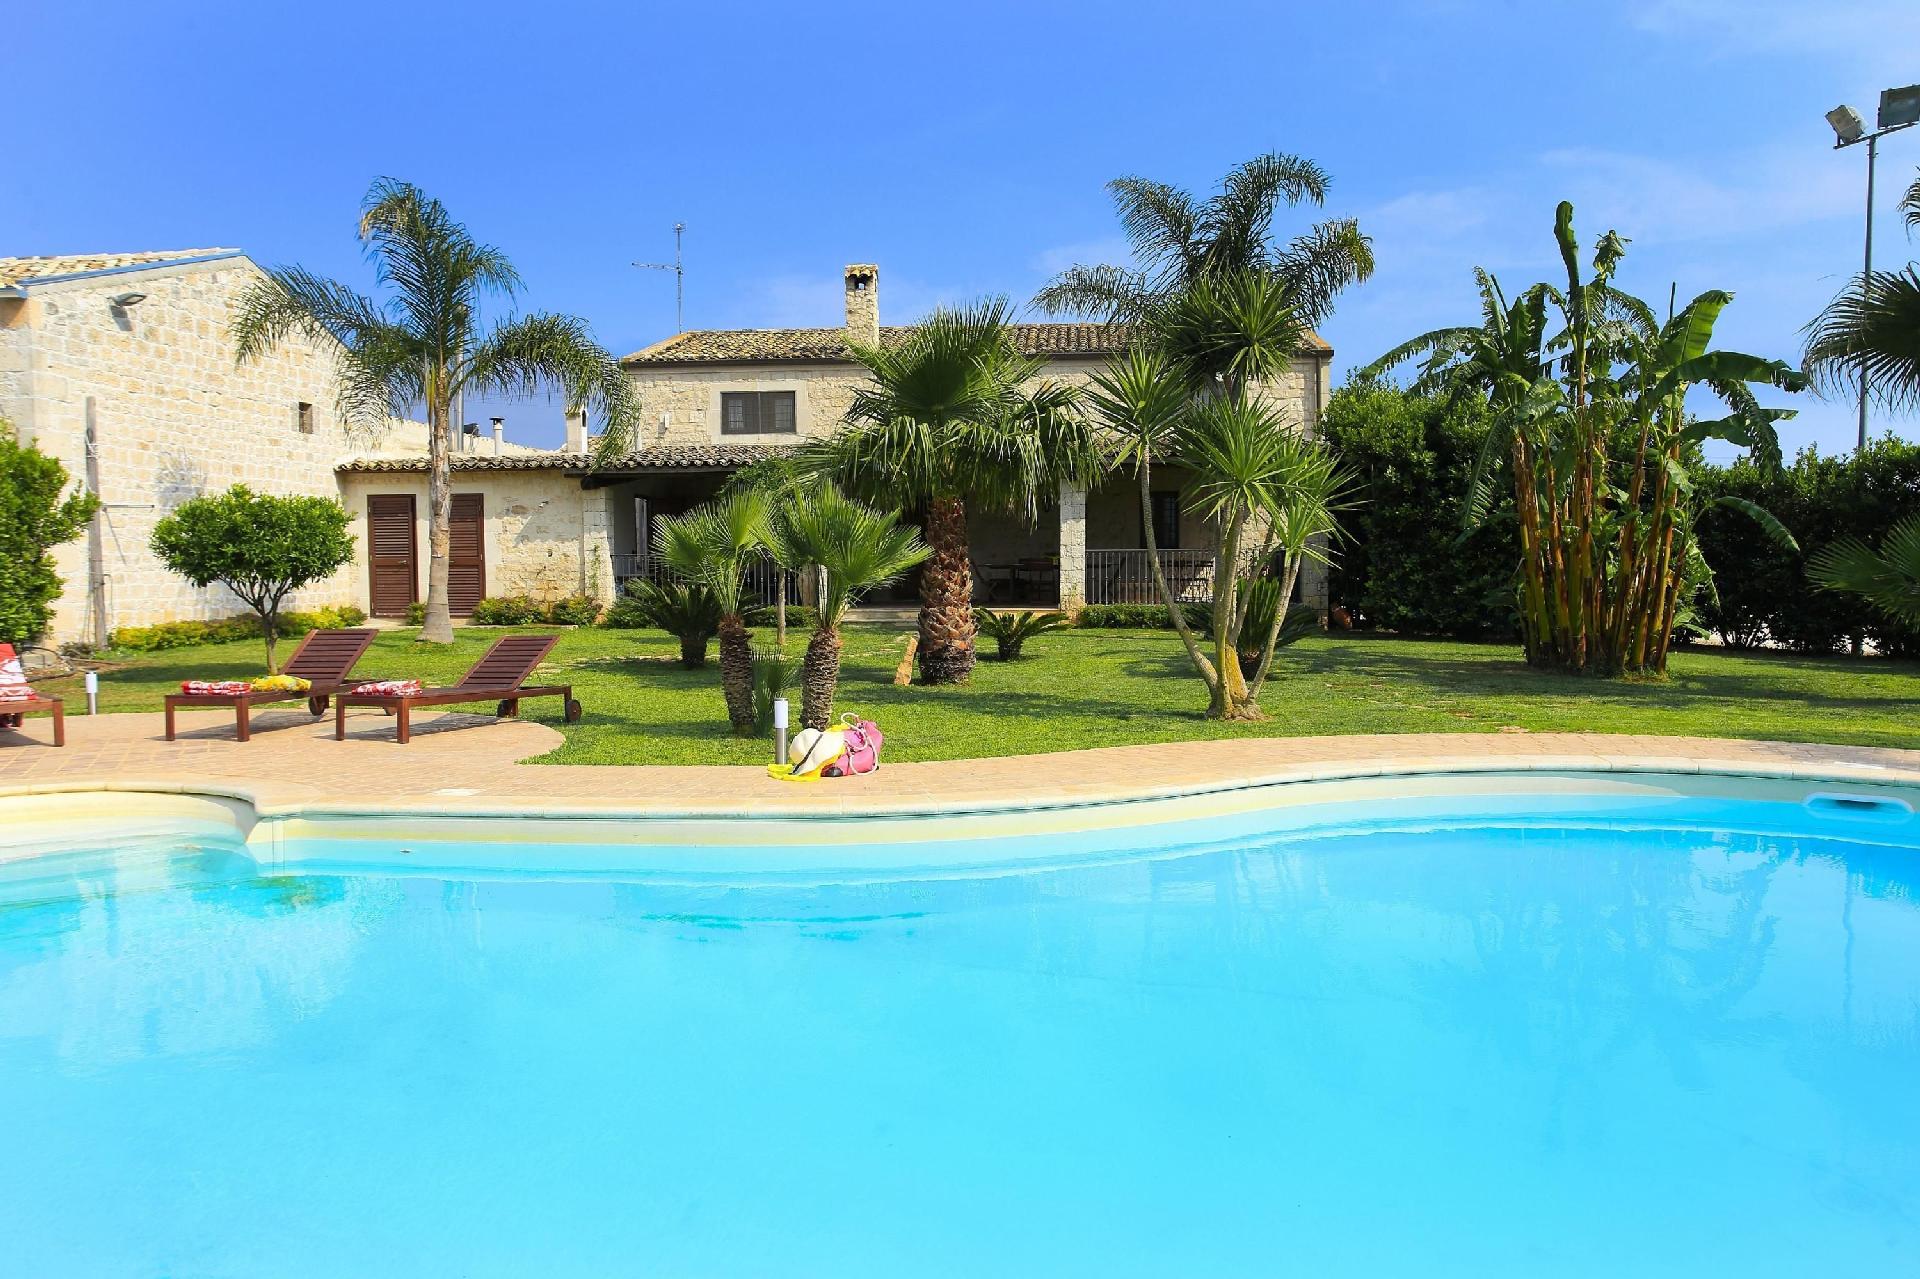 Ferienhaus mit Pool, Garten und Terrasse sowie Par Ferienhaus in Italien